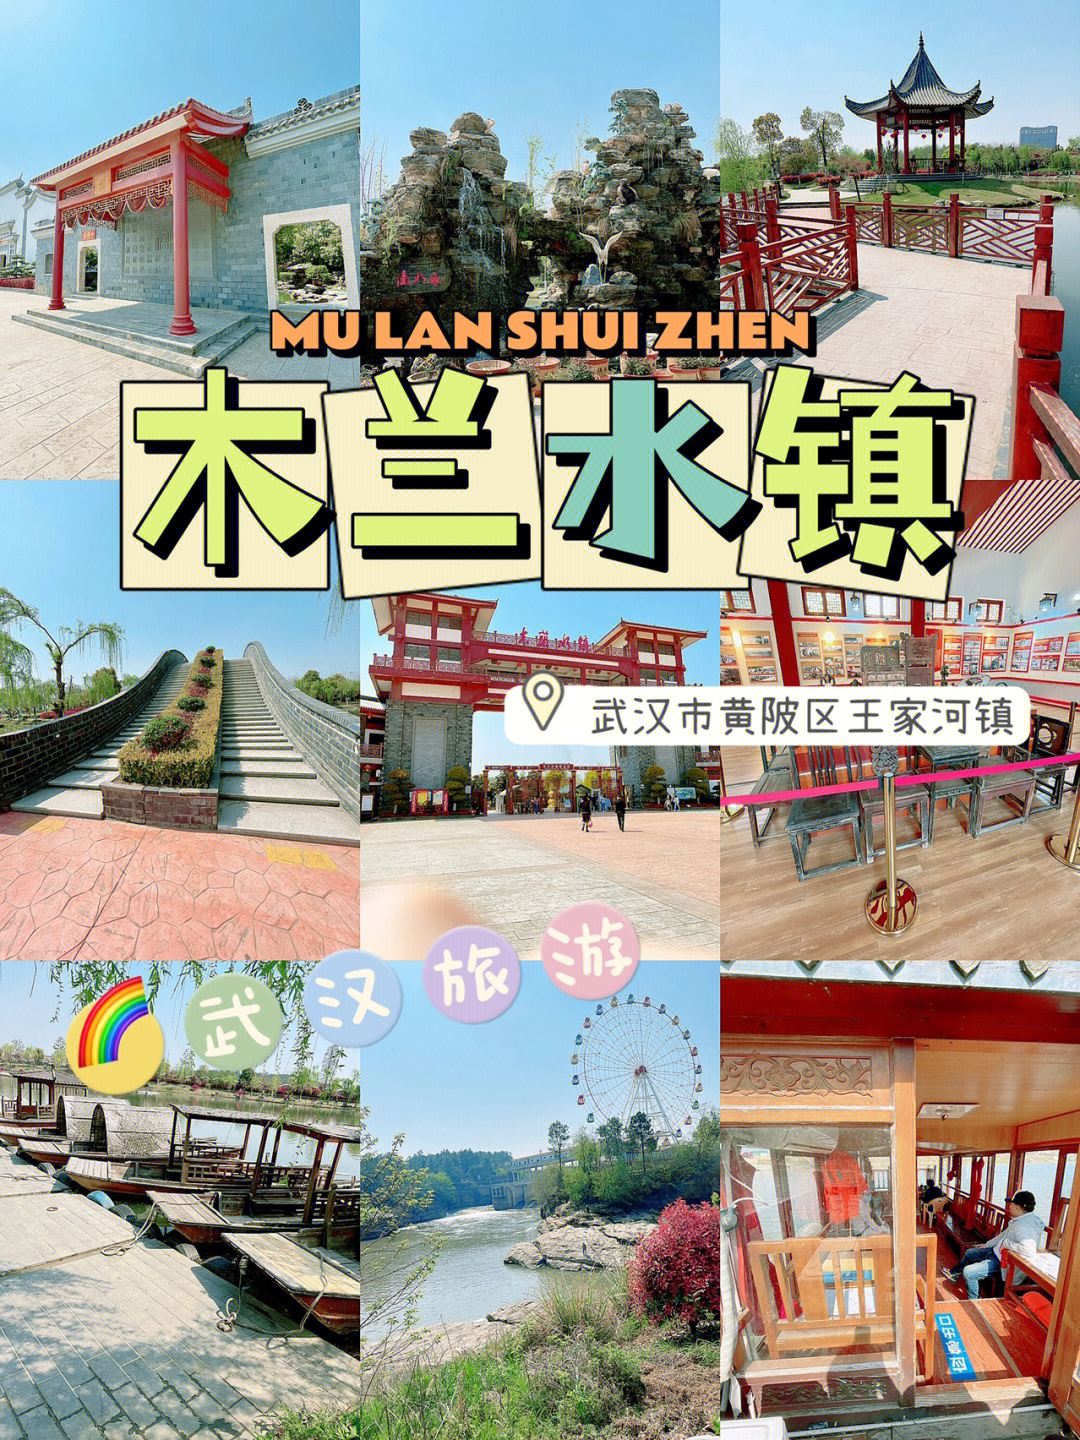 武汉市内的99假期玩乐,木兰系列景区,你值得拥有～07交通:市区内